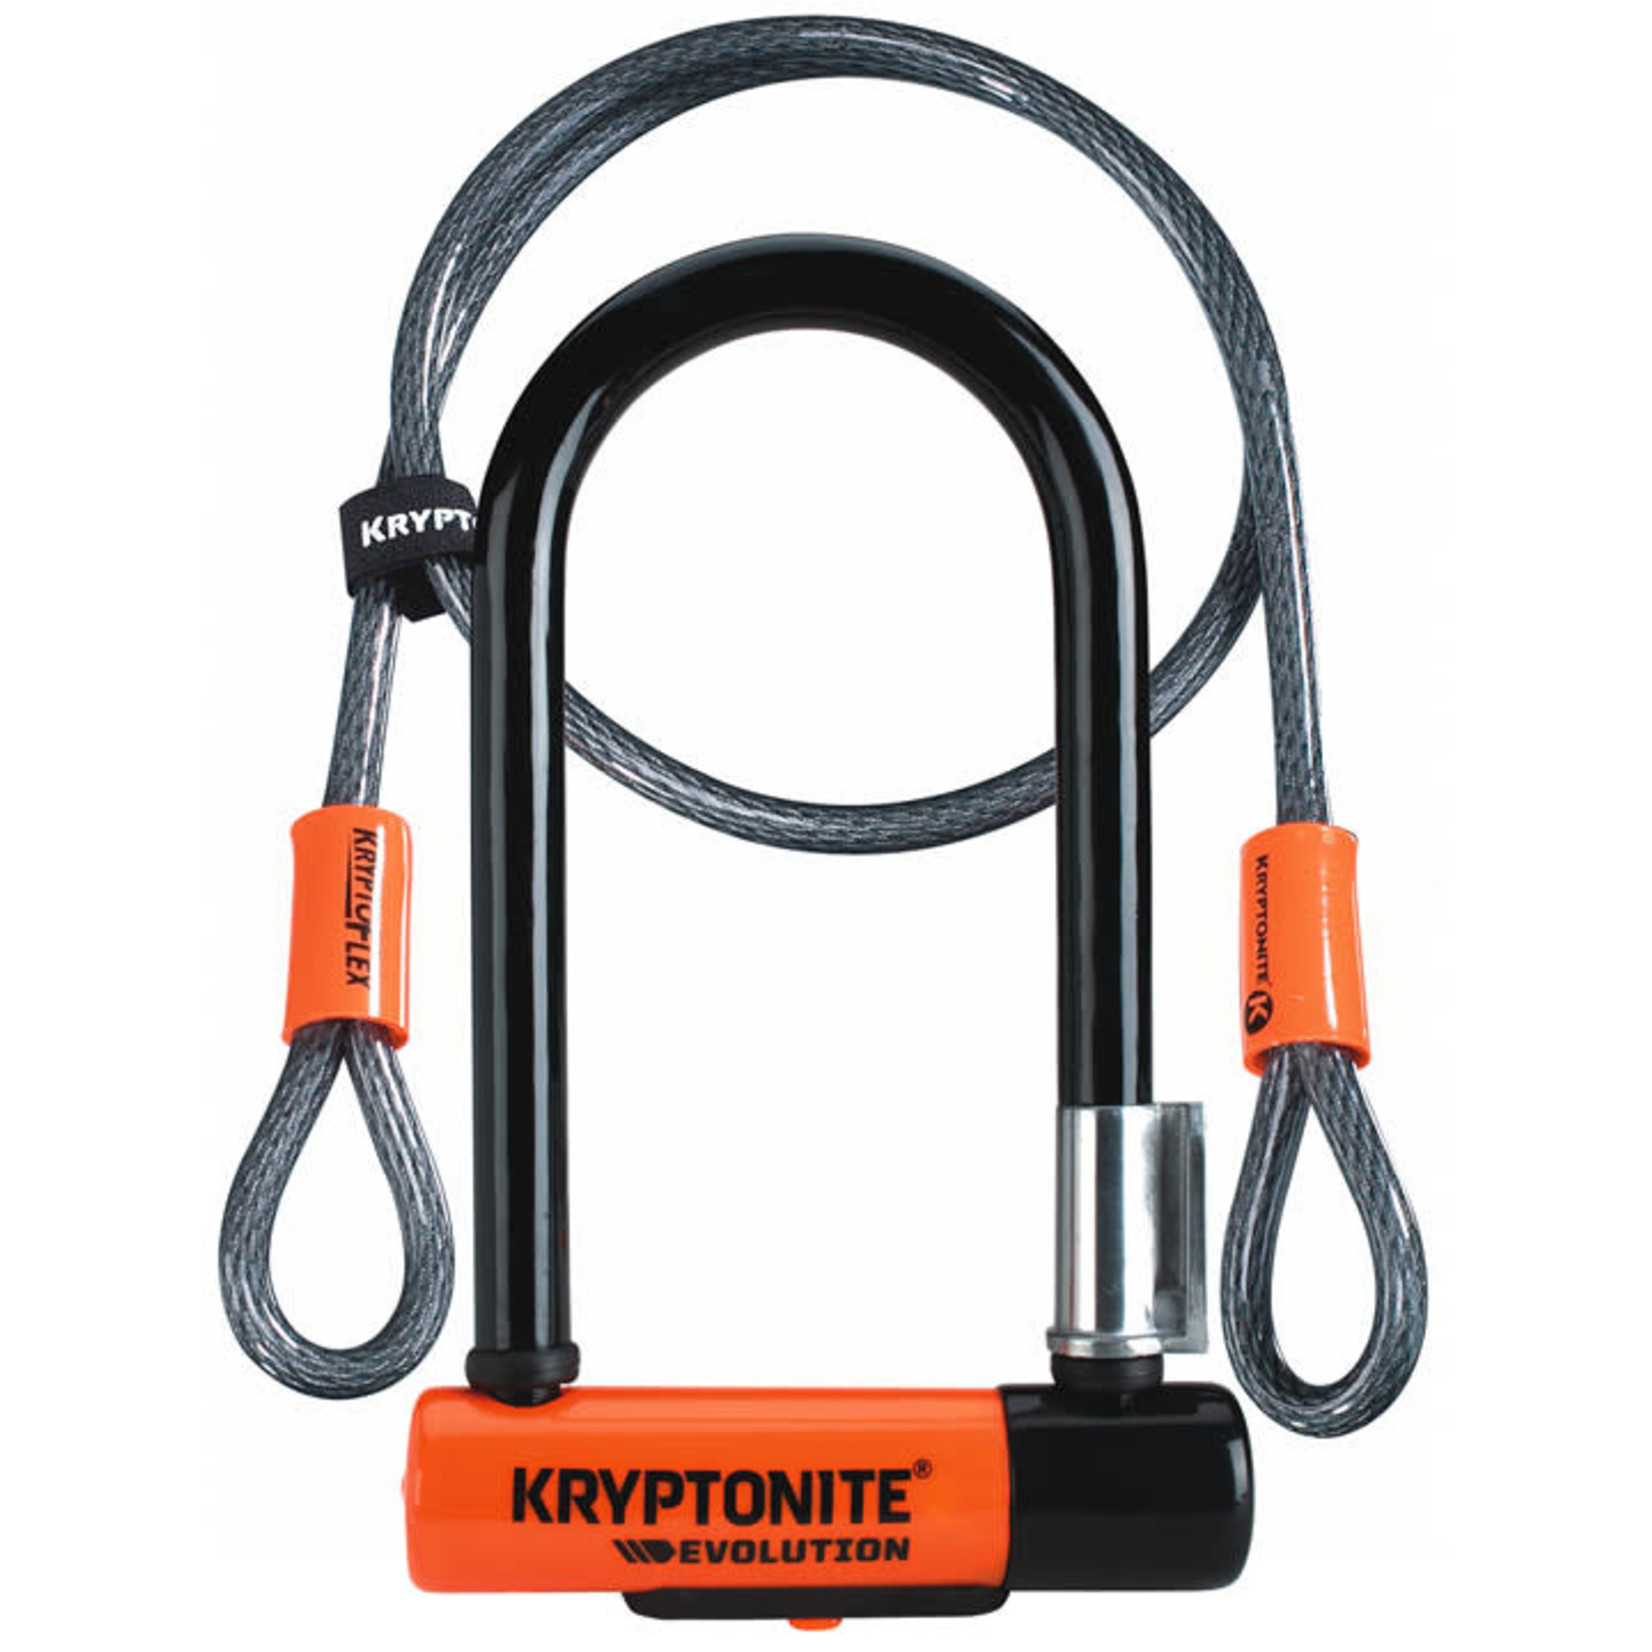 Kryptonite Kryptonite Evo Mini-7 U-Lock w/ cable